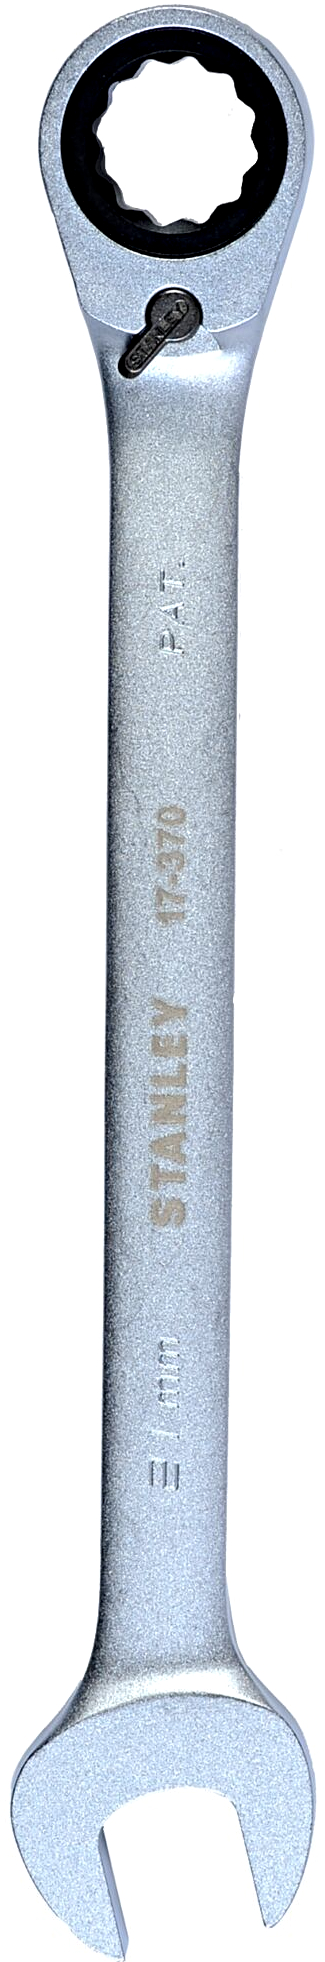 STANLEY 1-17-370 21mm ráčnový očkoplochý klíč s přepínací páčkou - 21 mm